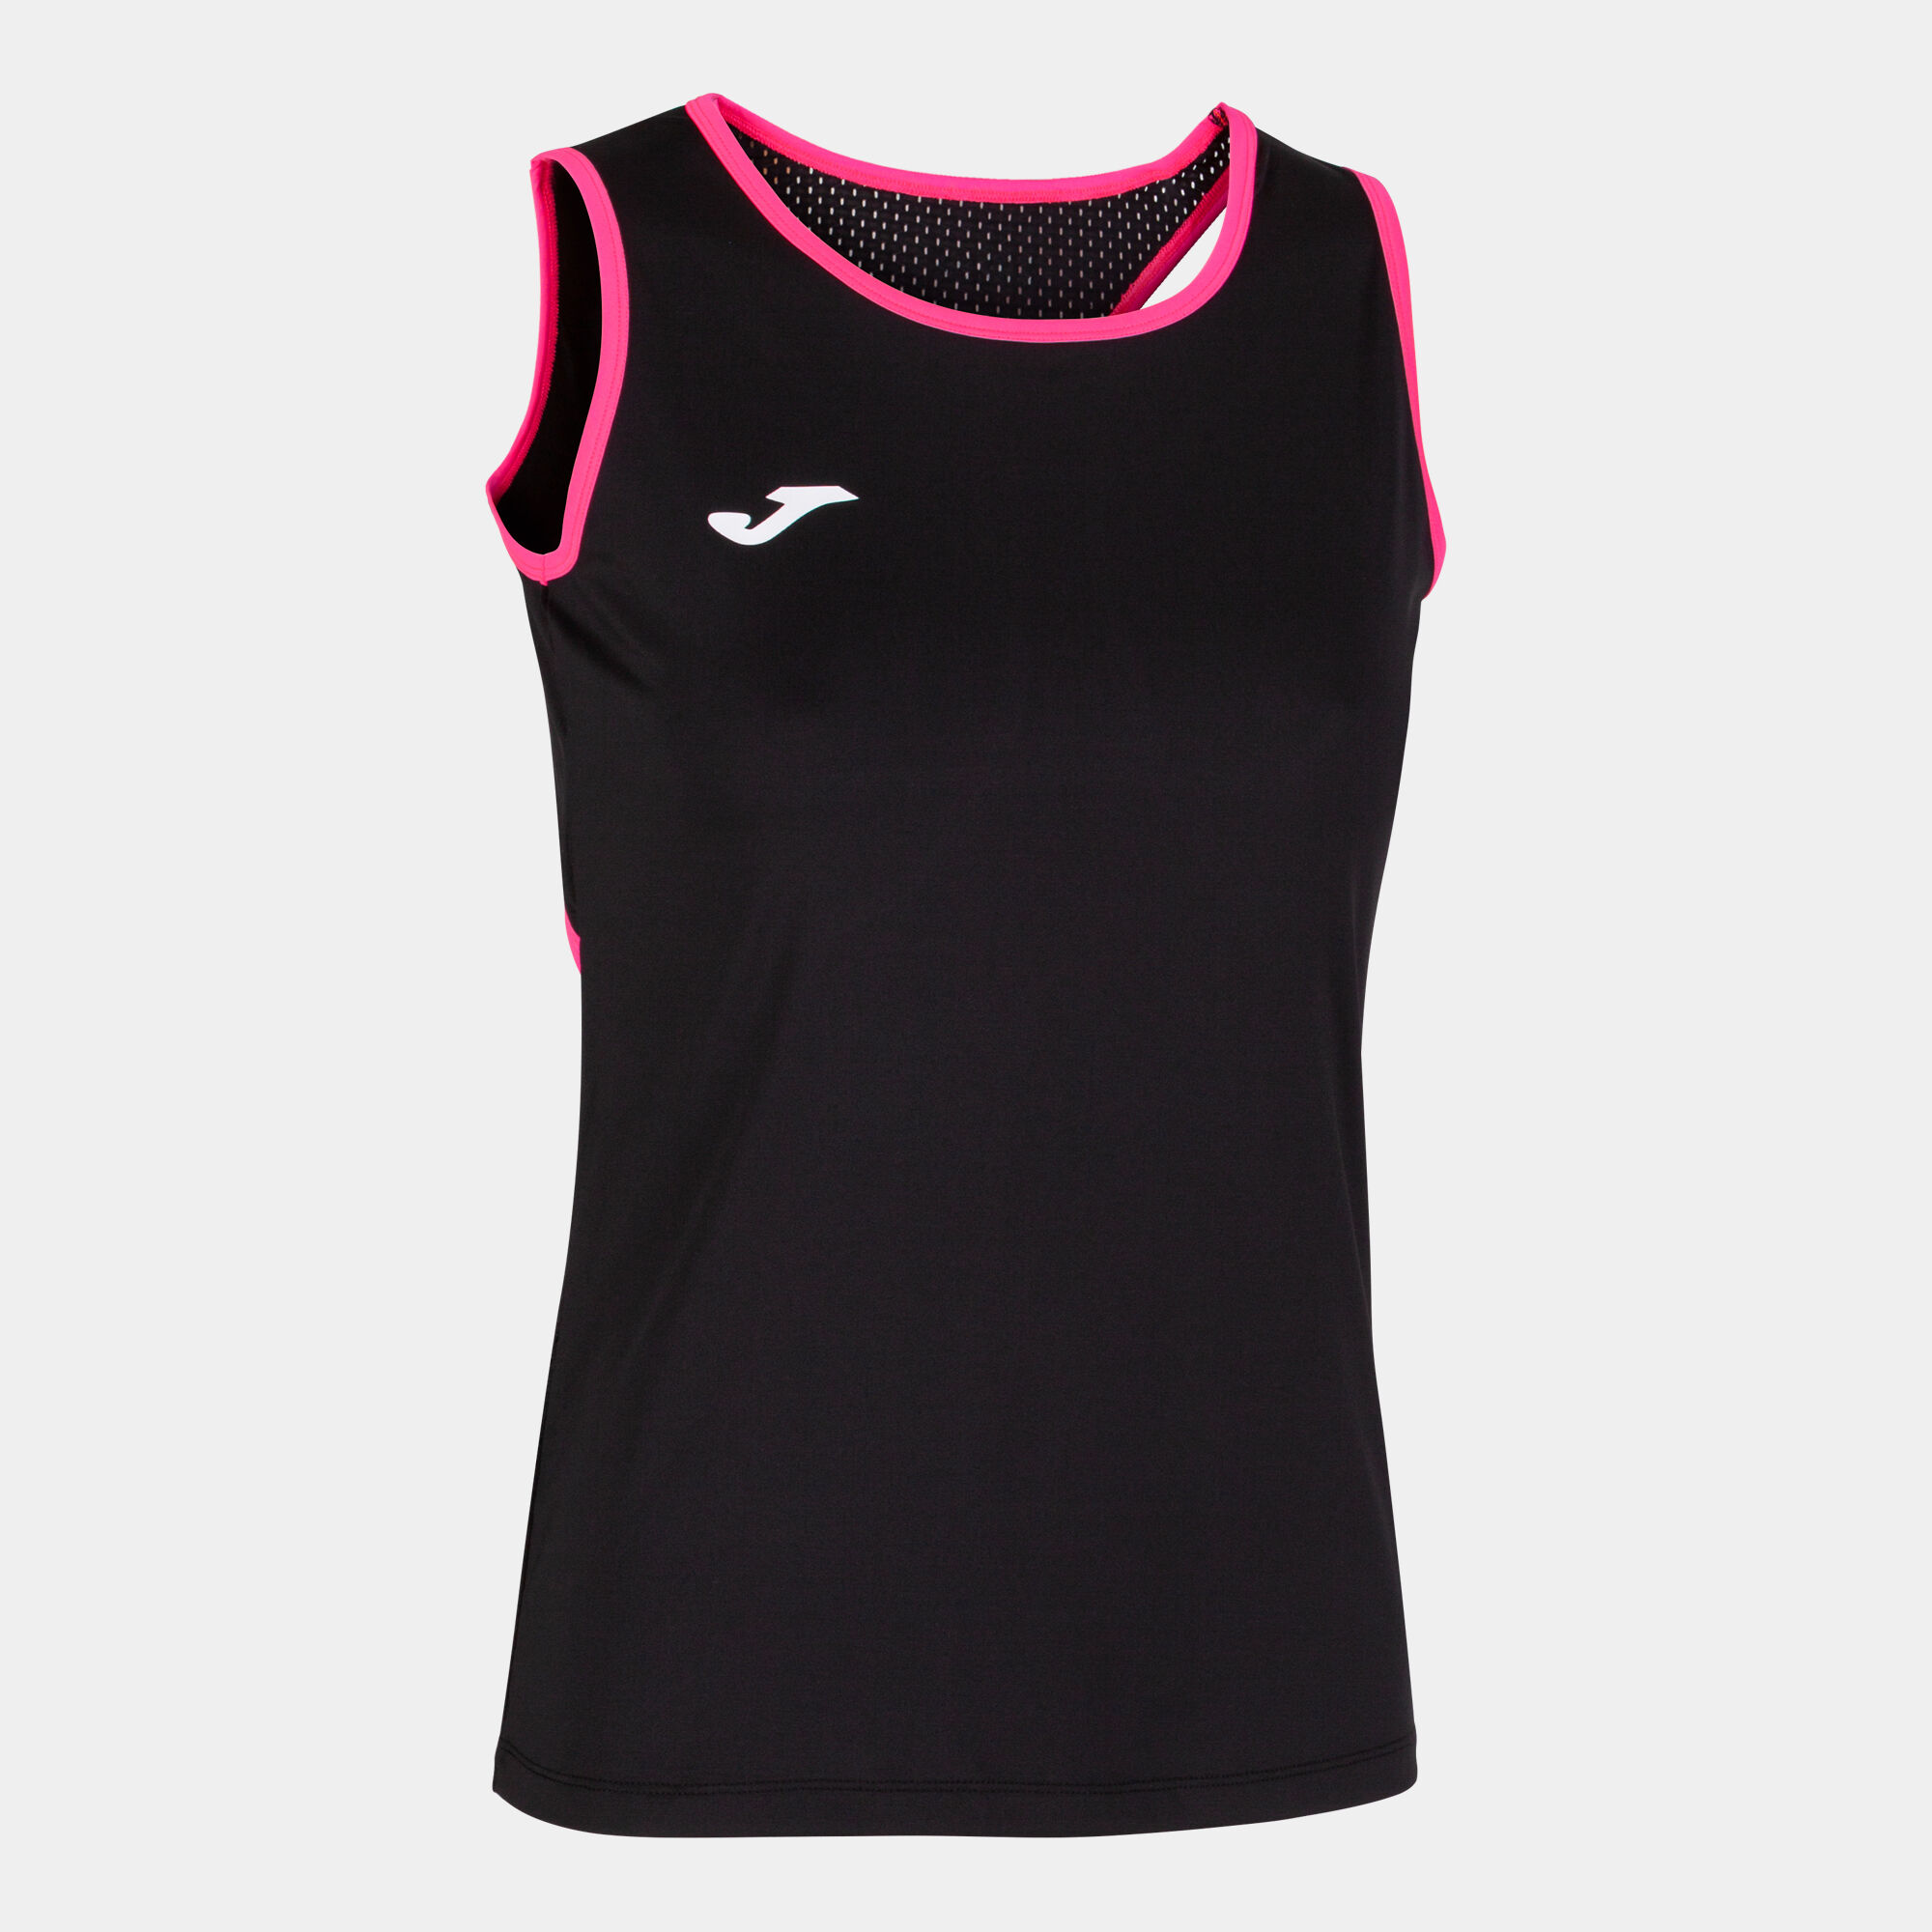 Schulterriemen-shirt frau Break schwarz neon-rosa